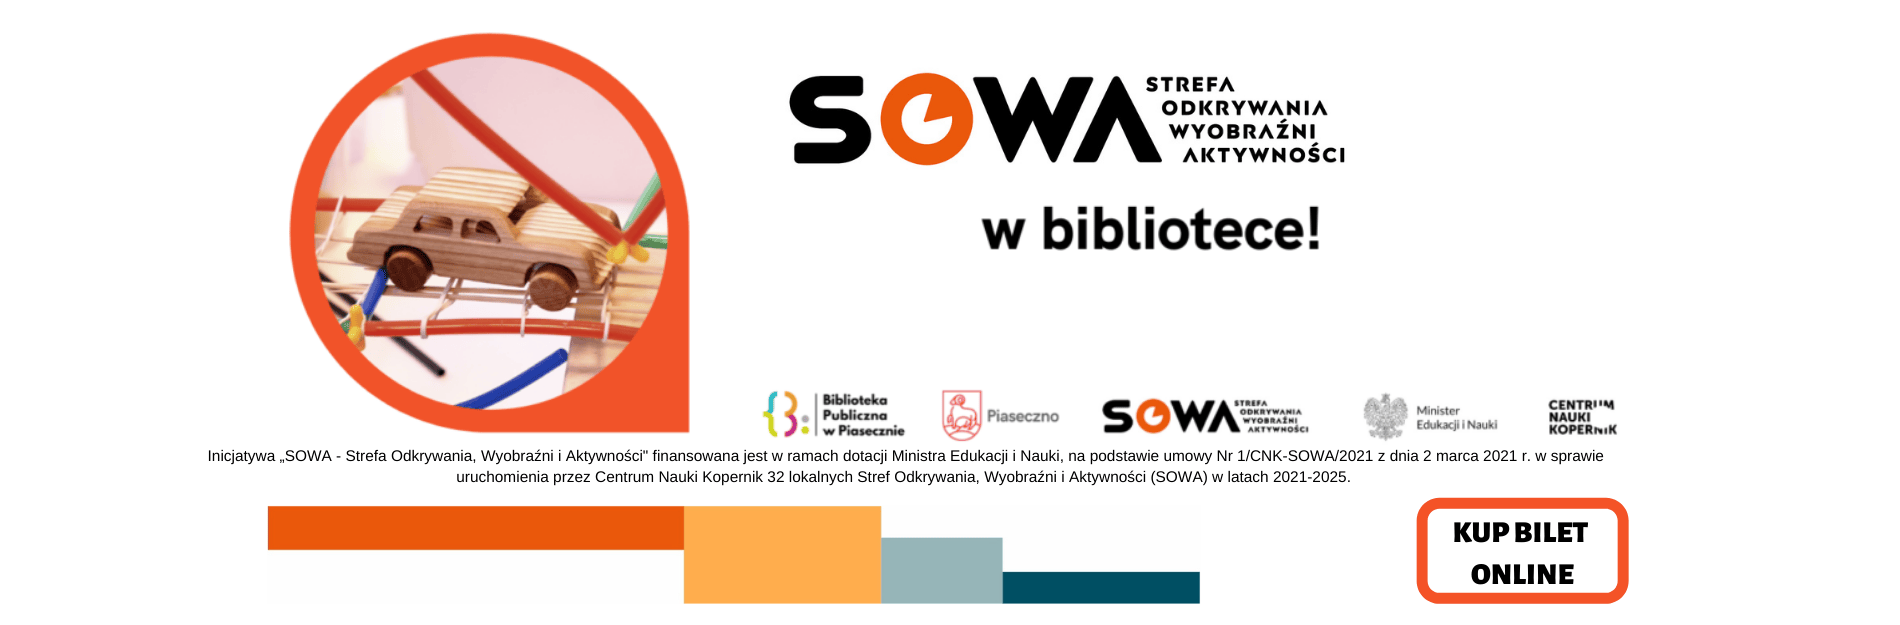 SOWA - strefa odkrywania wyobraźni, aktywności - baner informacyjny